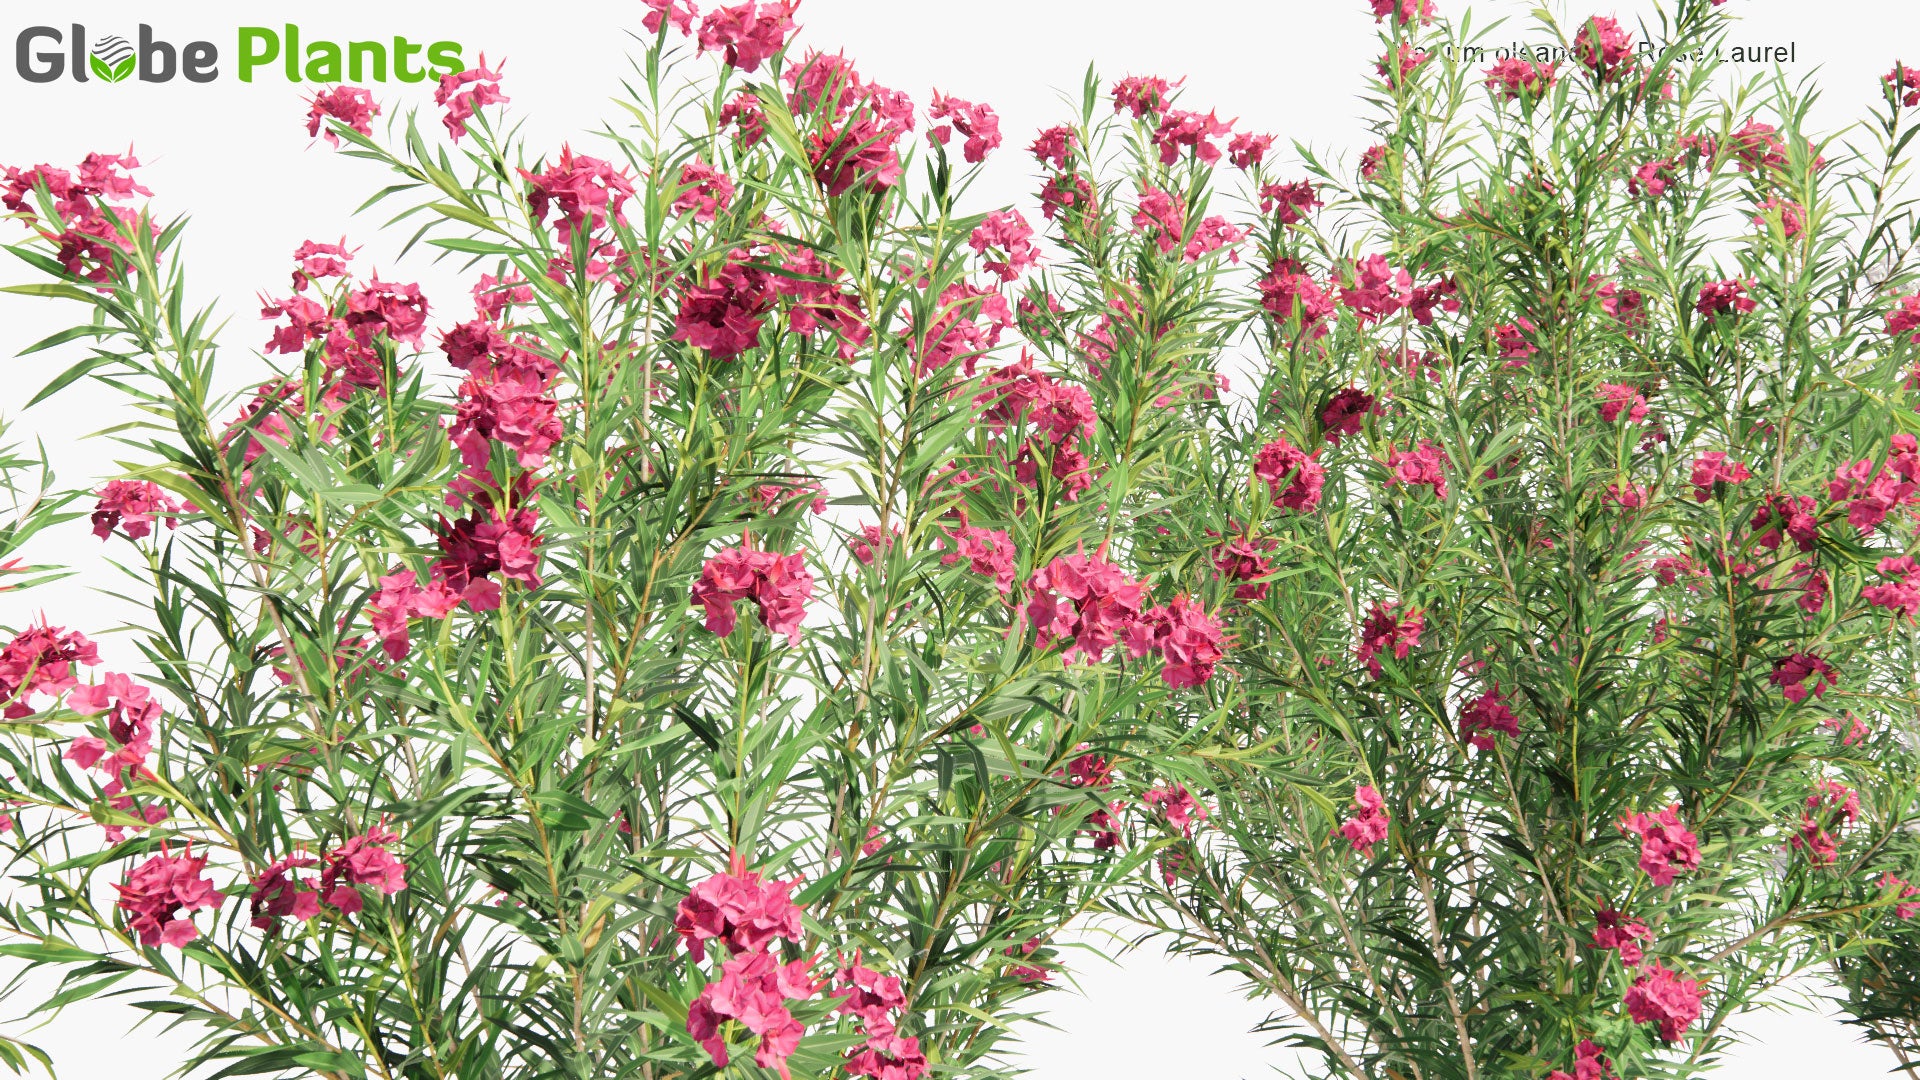 Low Poly Nerium Oleander - Rose Laurel (3D Model)